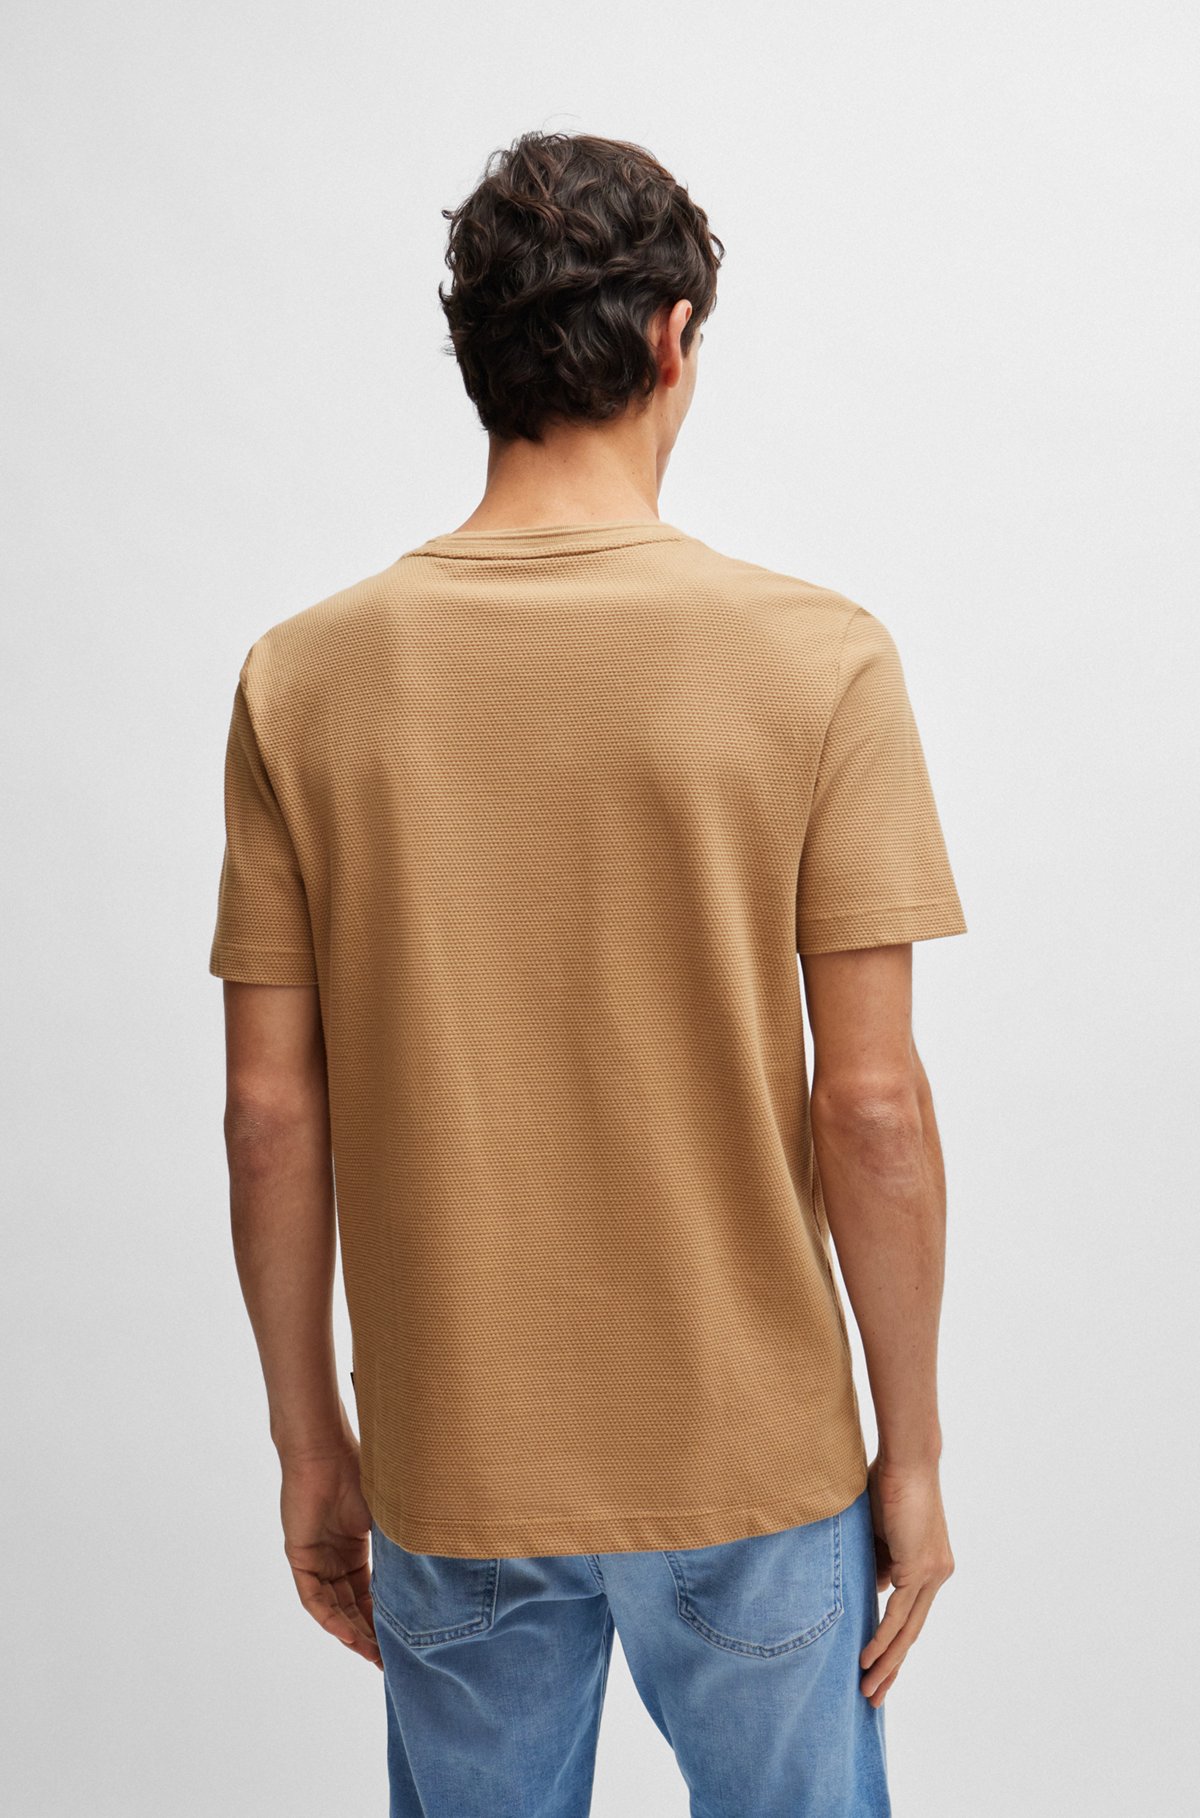 Cotton-blend T-shirt with bubble-jacquard structure, Beige